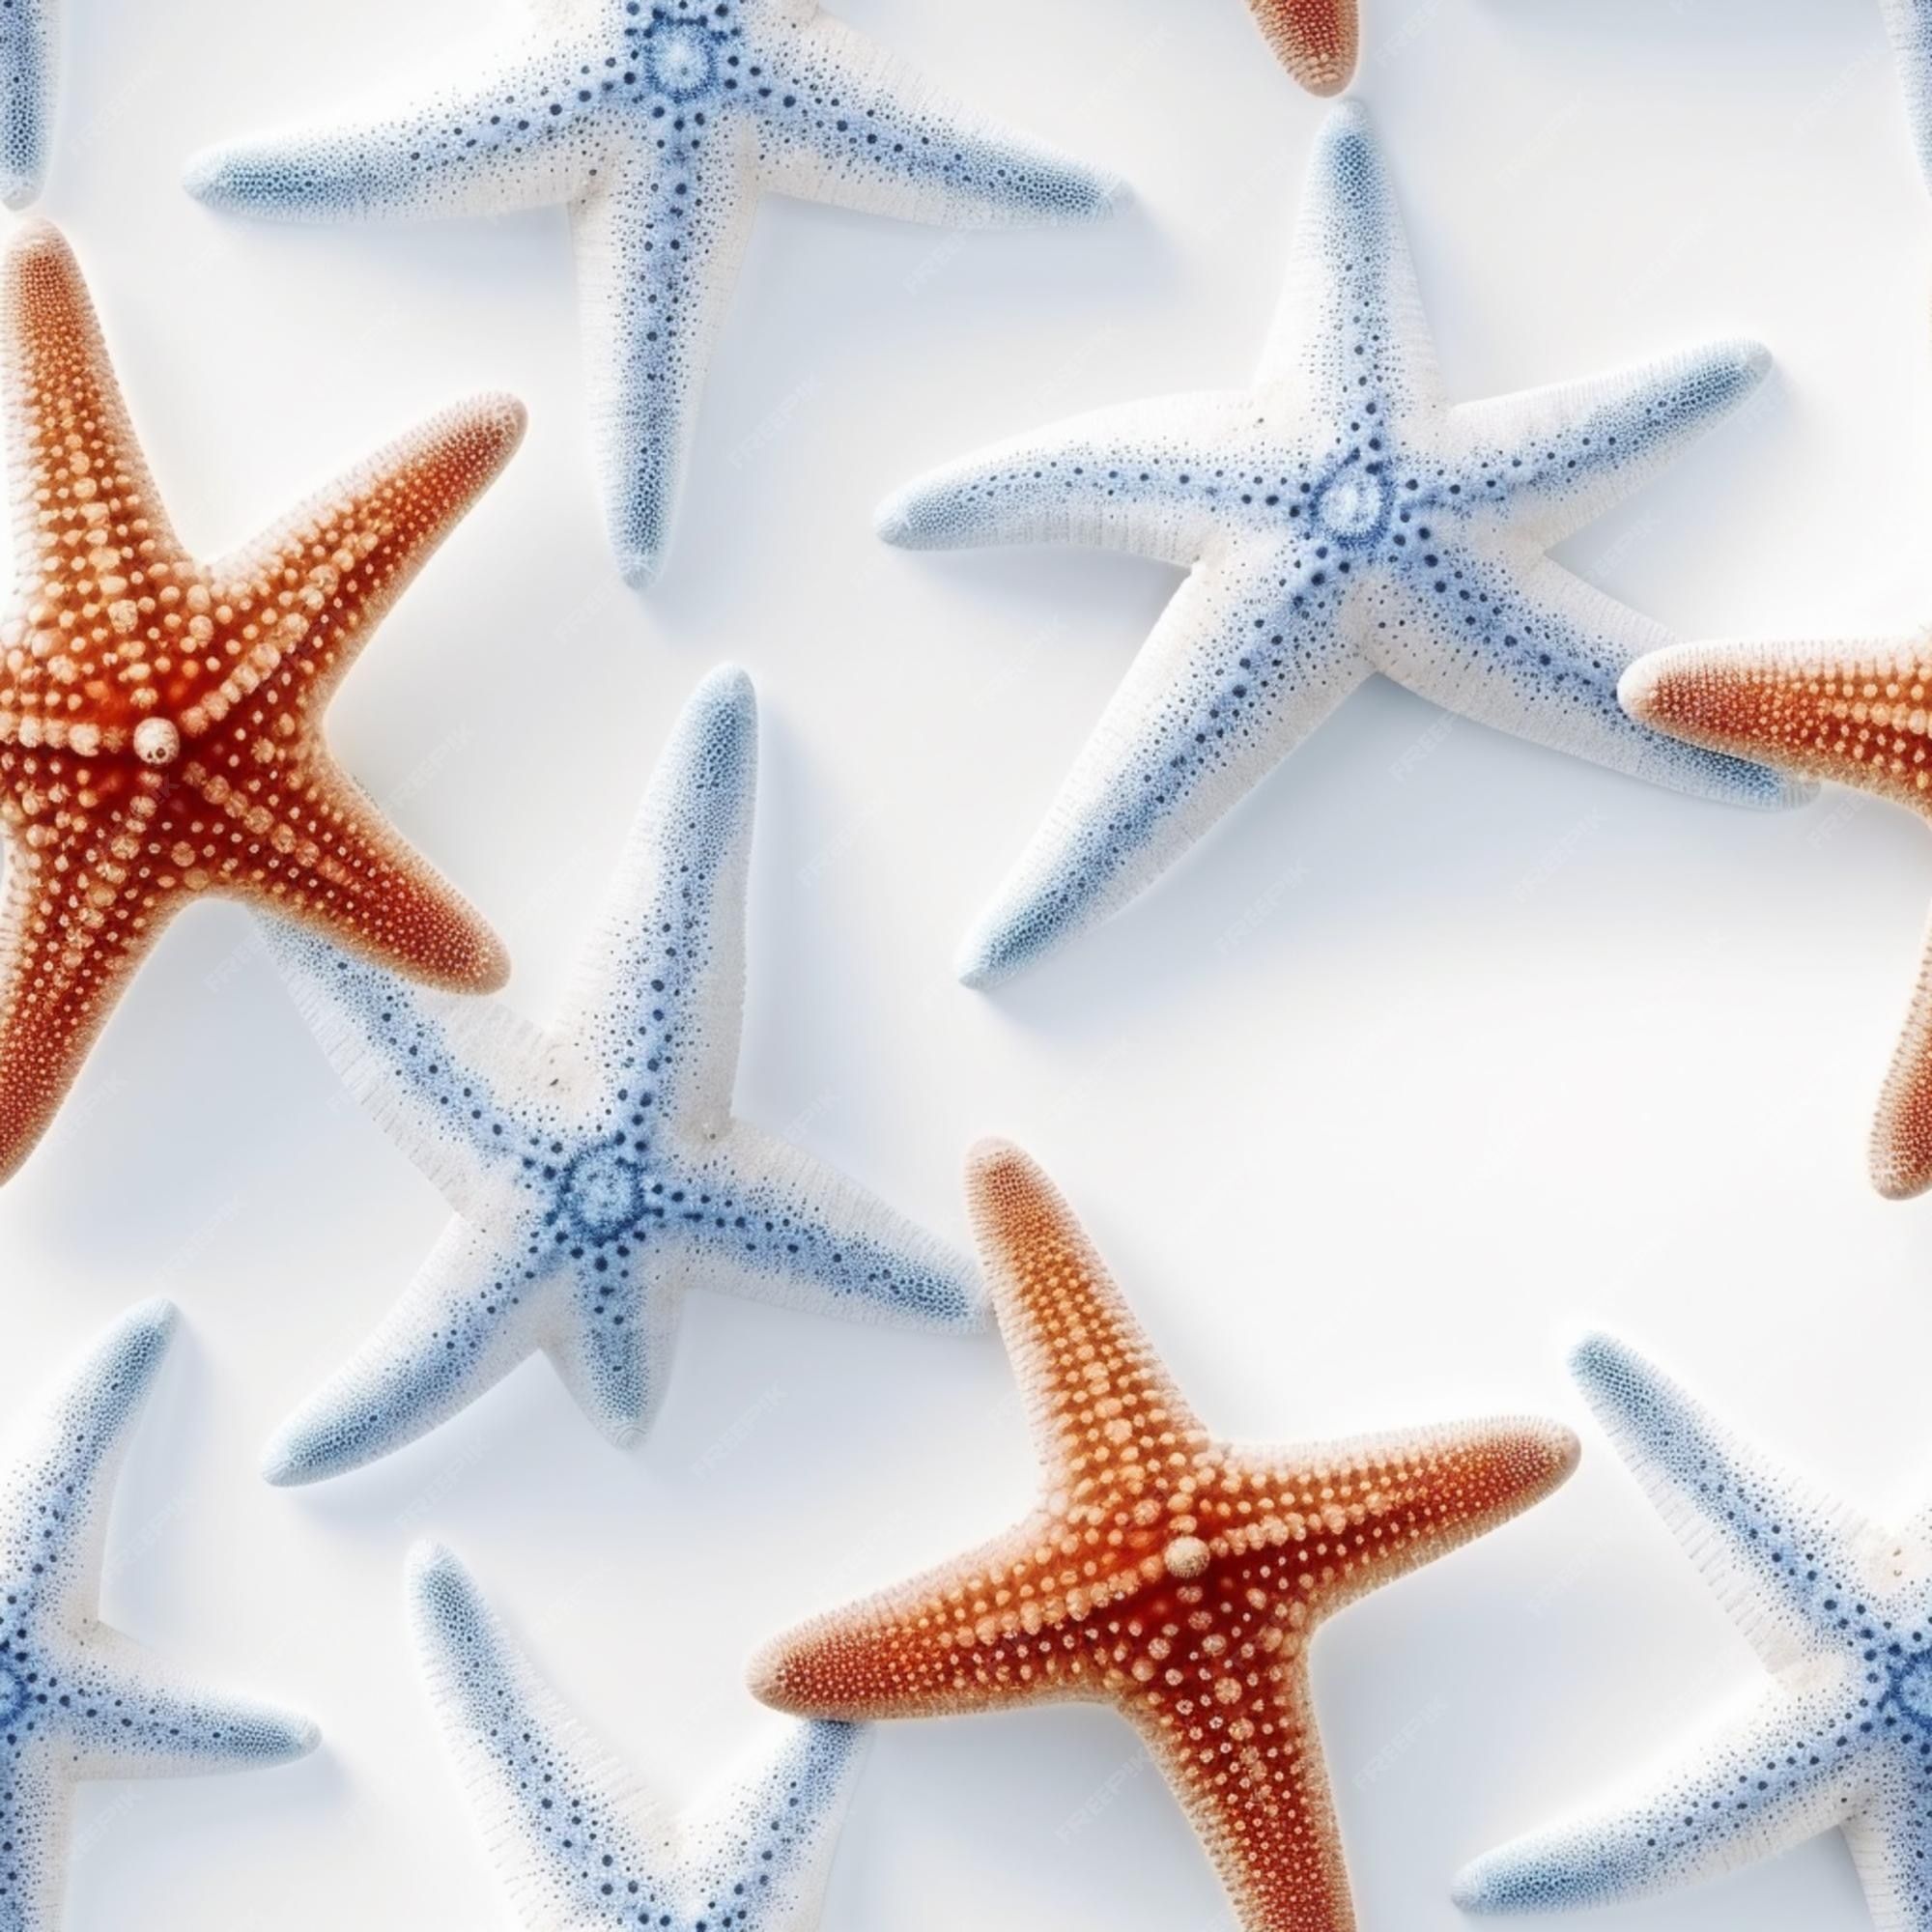 Starfish Animals Image